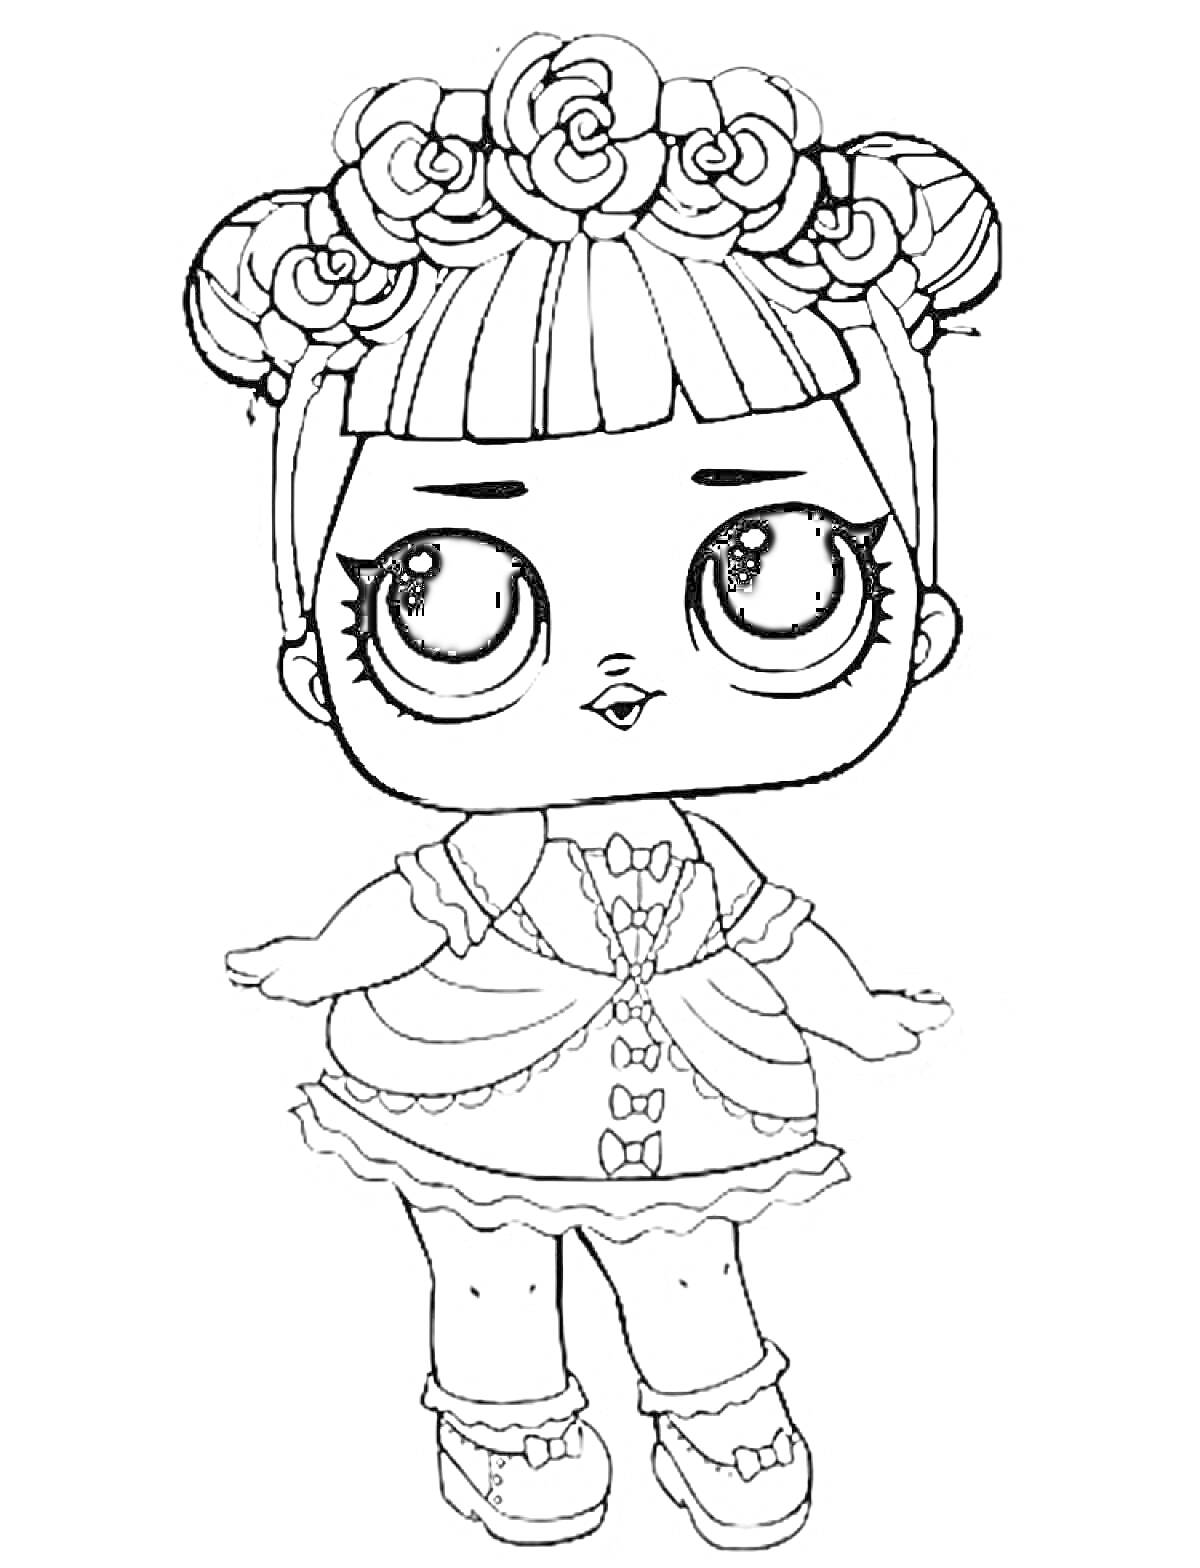 Раскраска Кукла Лол с цветами в волосах и в платье с бантами